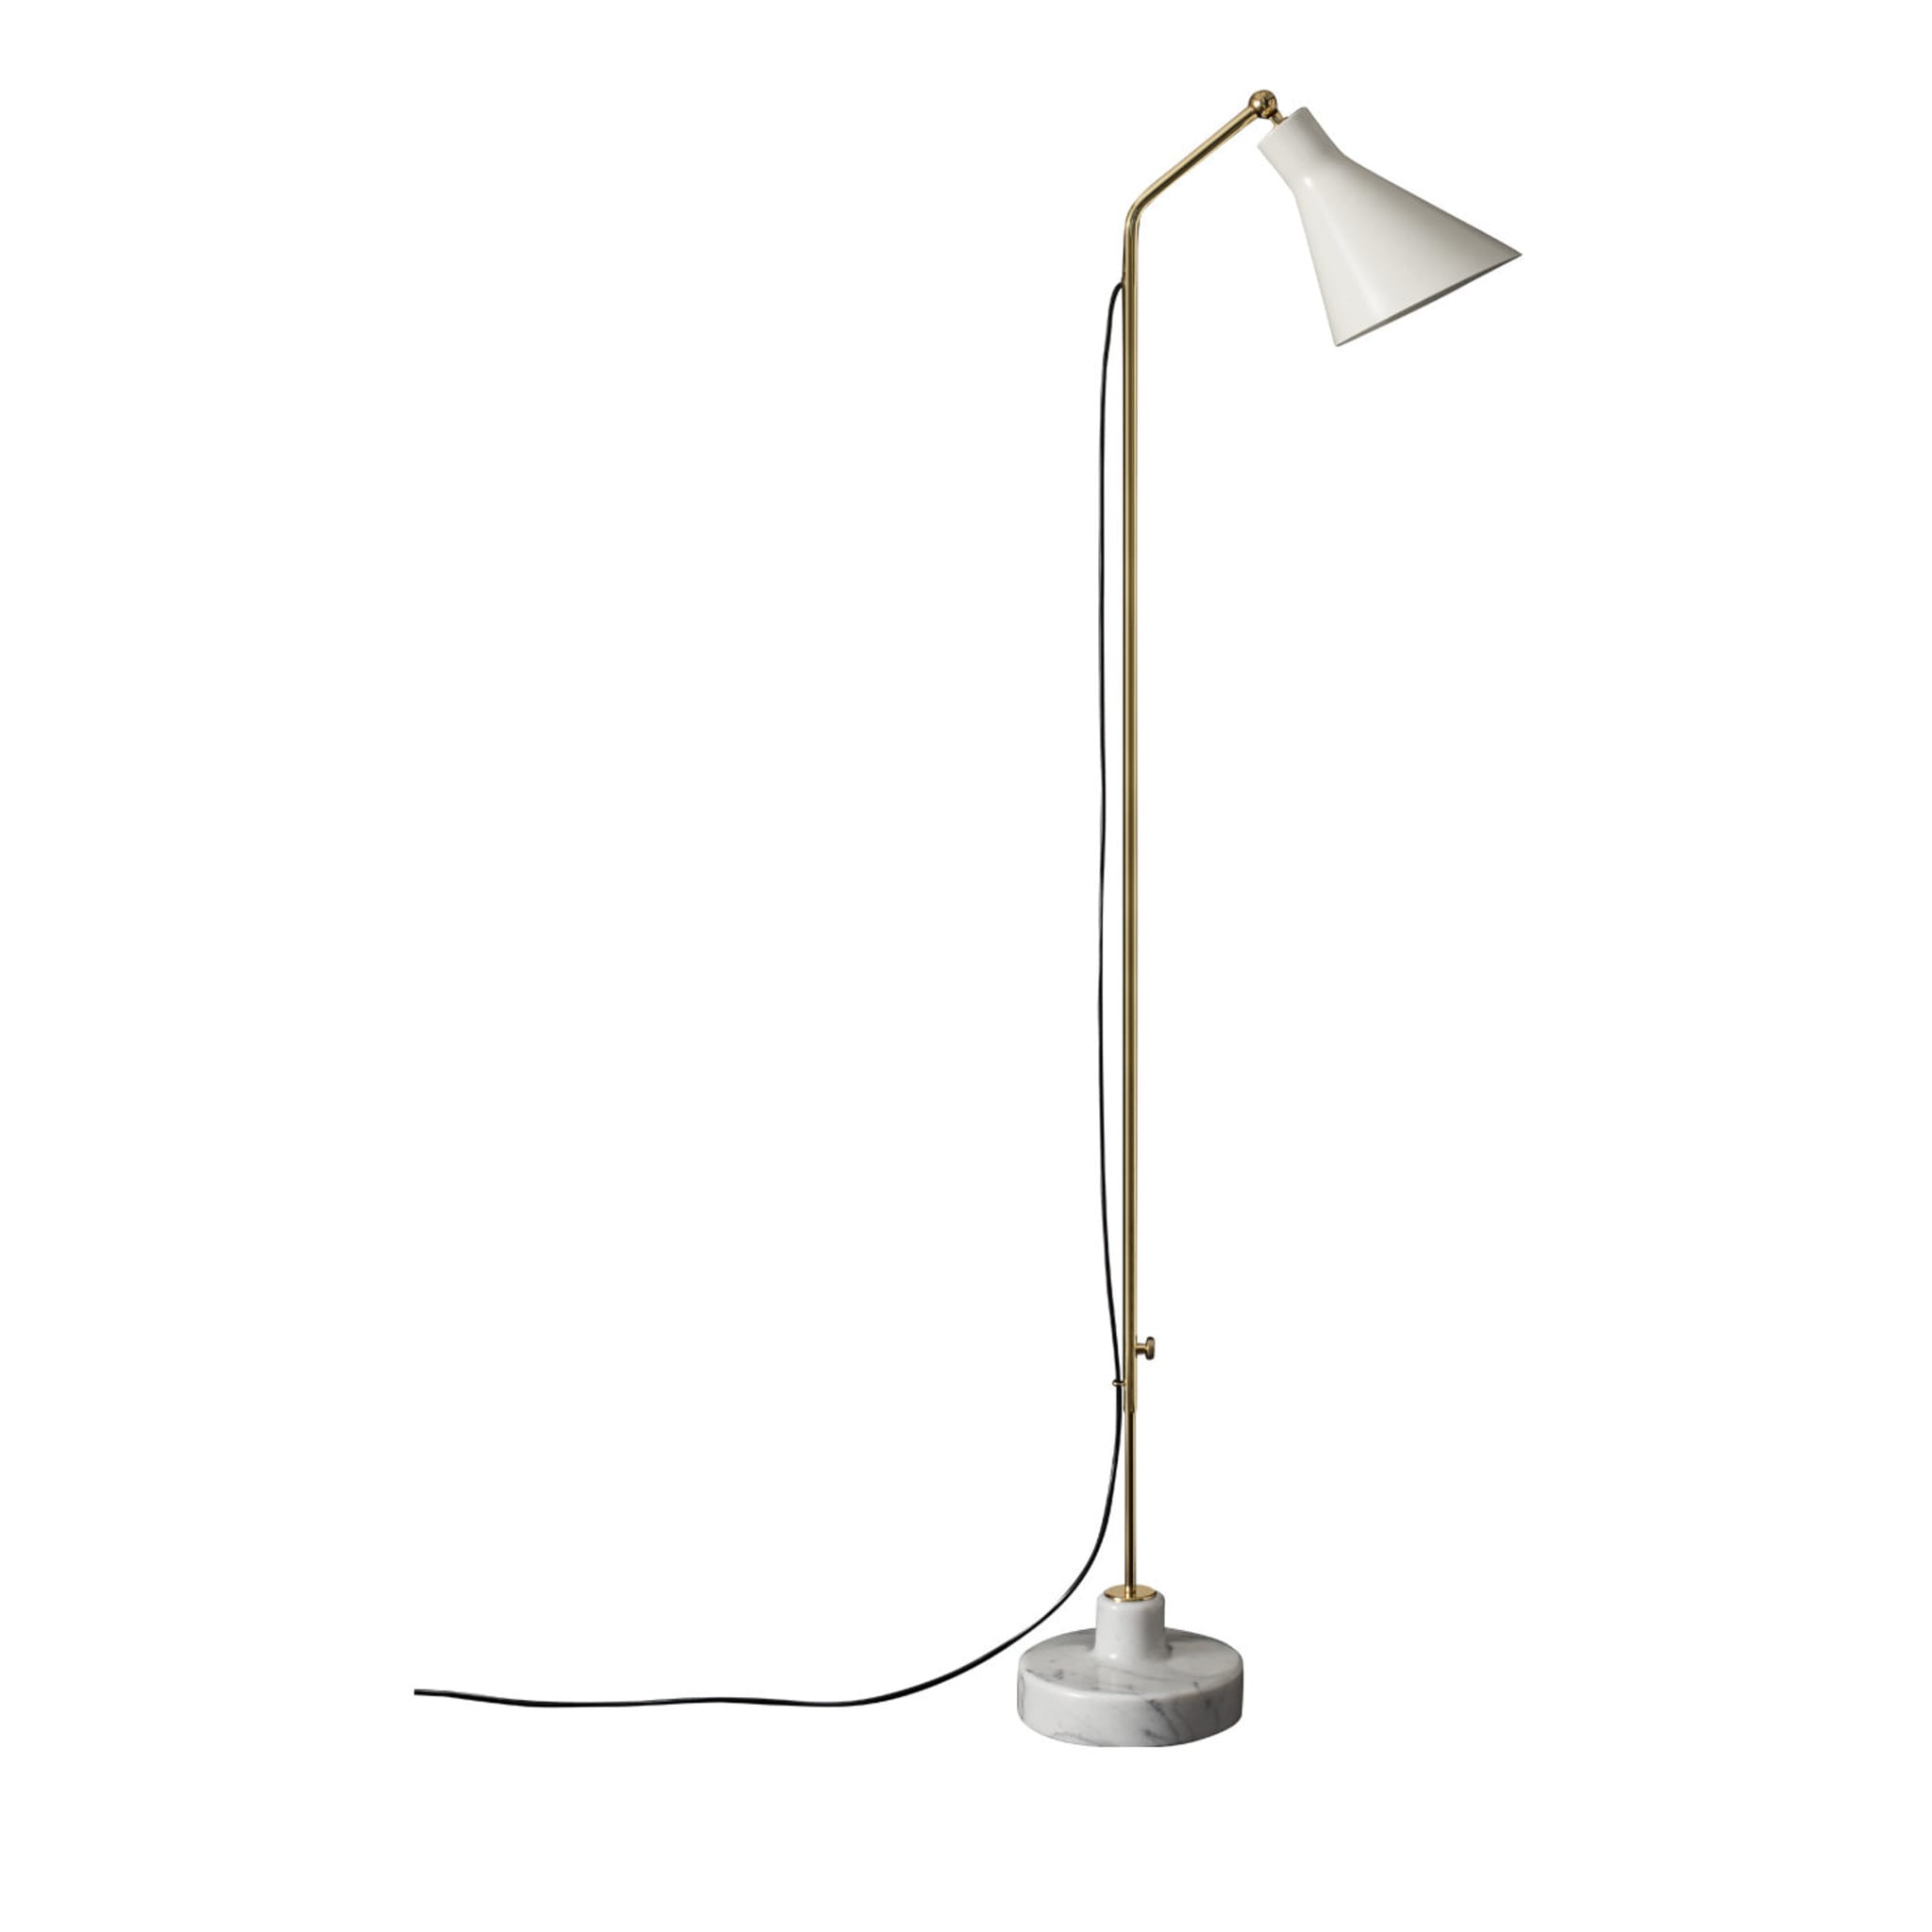 Alzabile Verstellbare lampe by Ignazio Gardella - Alternative Ansicht 1